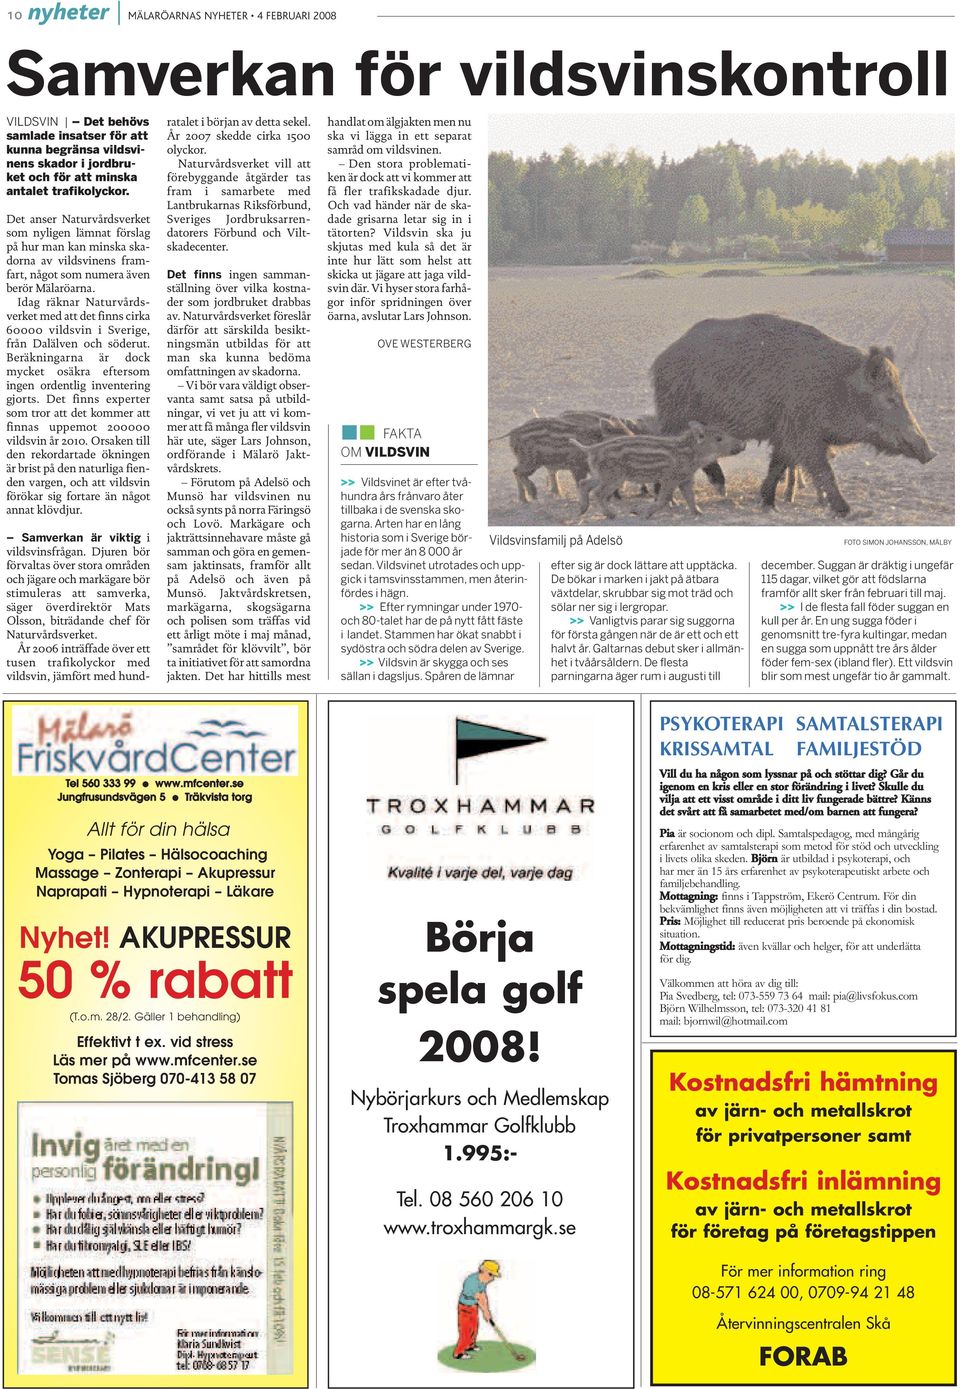 Idag räknar Naturvårdsverket med att det finns cirka 60000 vildsvin i Sverige, från Dalälven och söderut. Beräkningarna är dock mycket osäkra eftersom ingen ordentlig inventering gjorts.